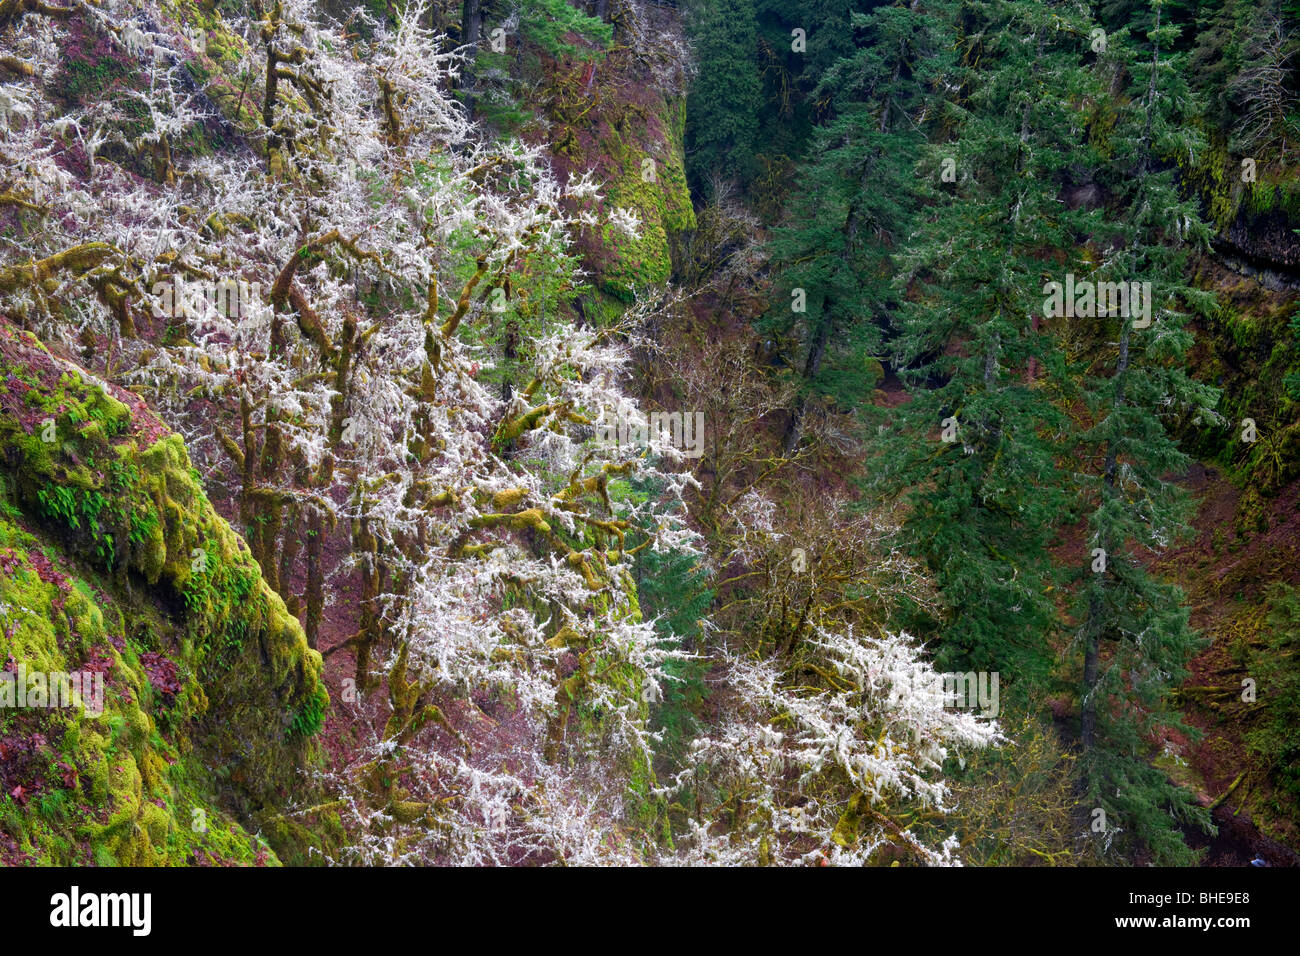 Schweren Winter Moos hängt an große Laubbäume Ahorn in Oregon Eagle Creek Canyon und der Columbia River Gorge. Stockfoto